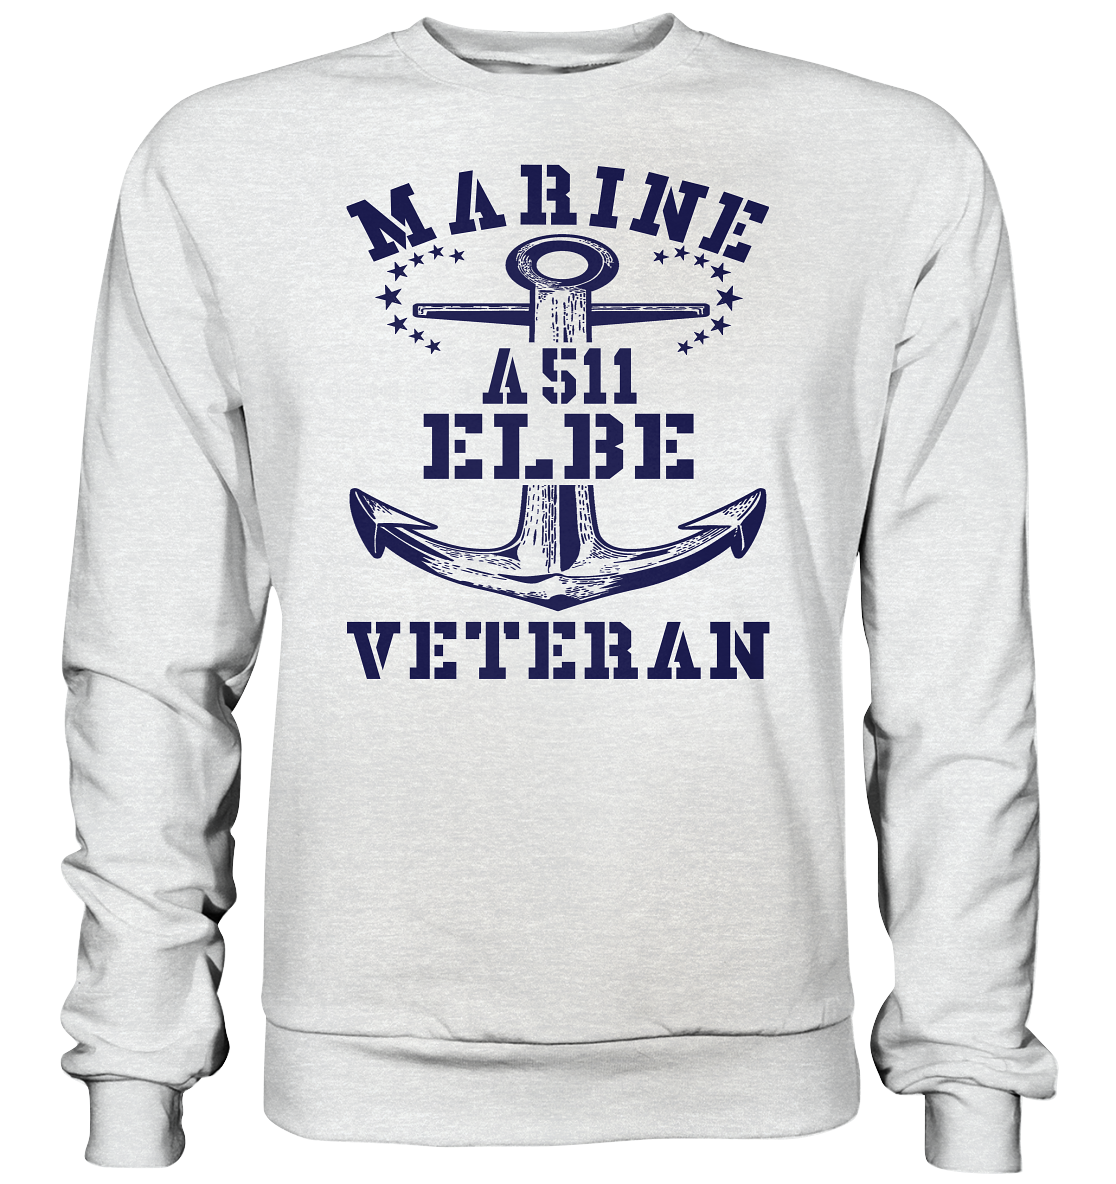 Tender A511 ELBE Marine Veteran - Premium Sweatshirt